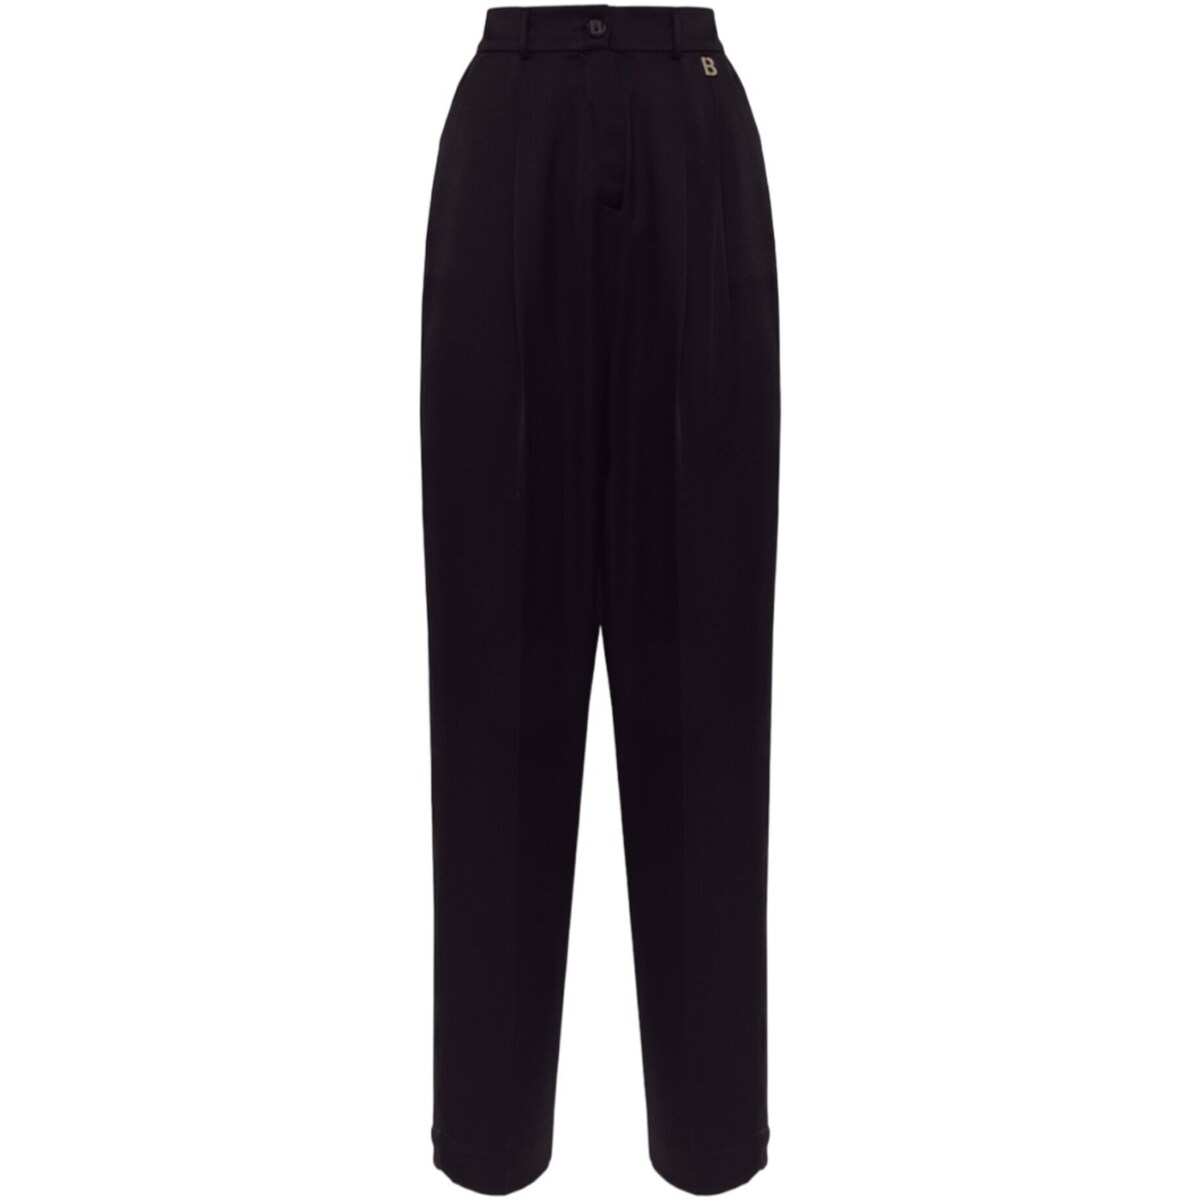 textil Mujer Pantalones con 5 bolsillos Blugirl RA4114T1942 Negro